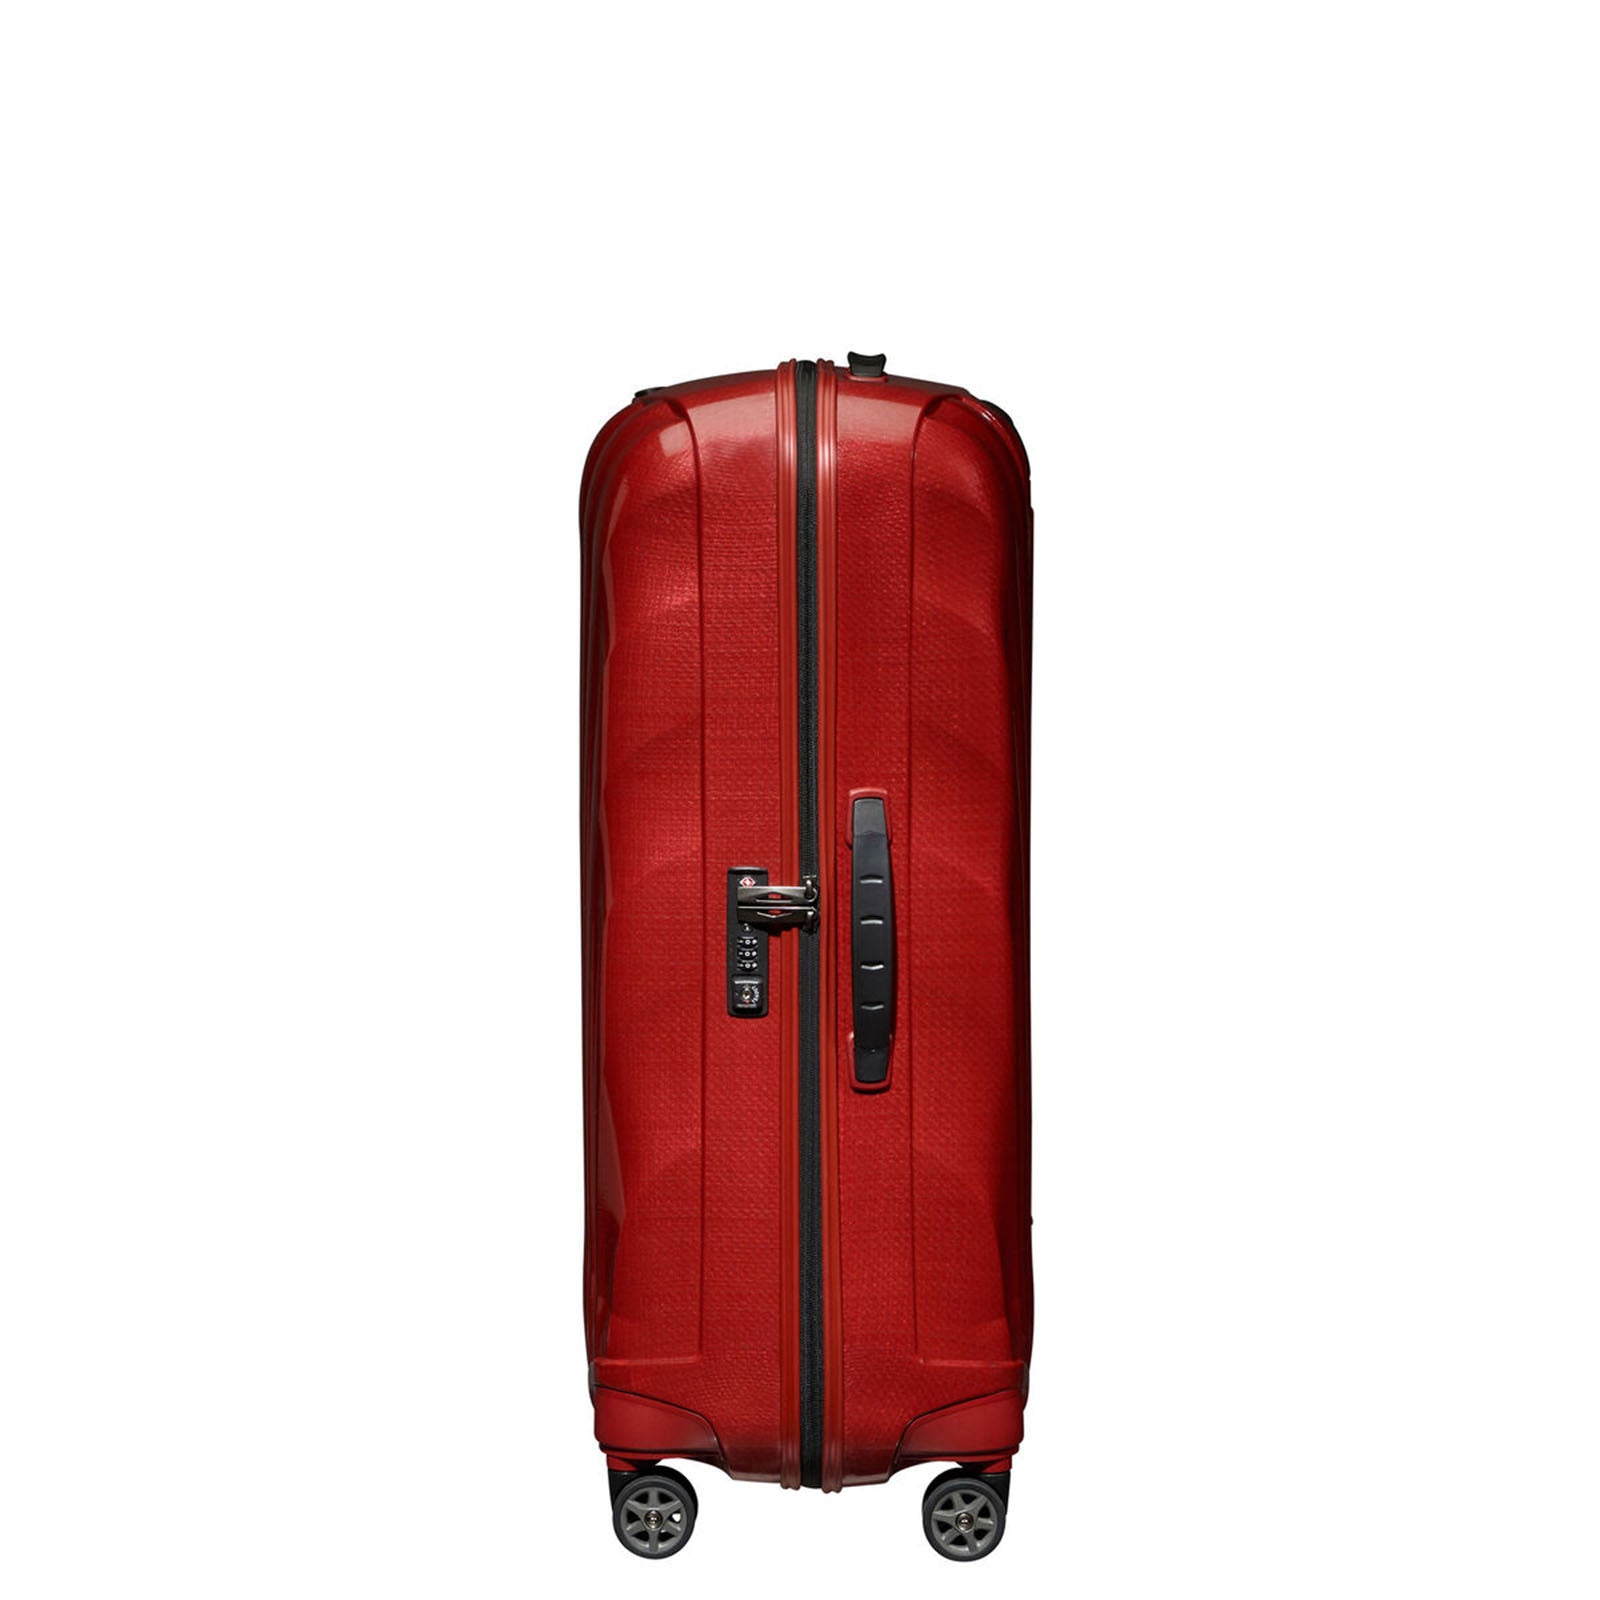 Samsonite-C-Lite-75cm-Suitcase-Chili-Red-Lock